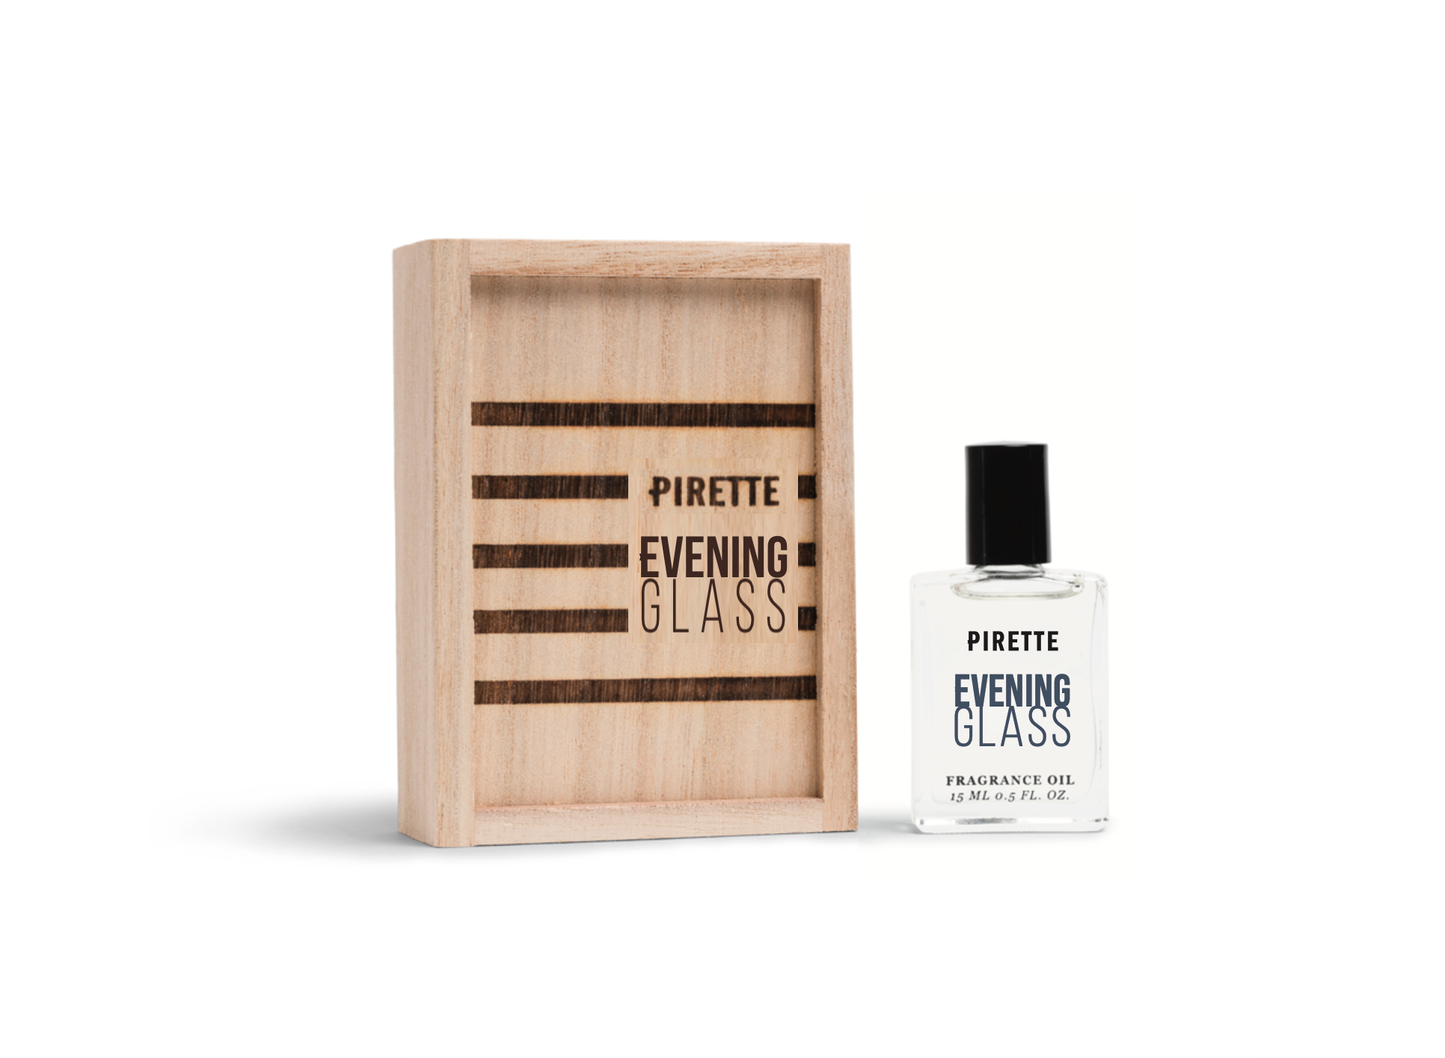 PIRETTE - Evening Glass Fragrance Oil